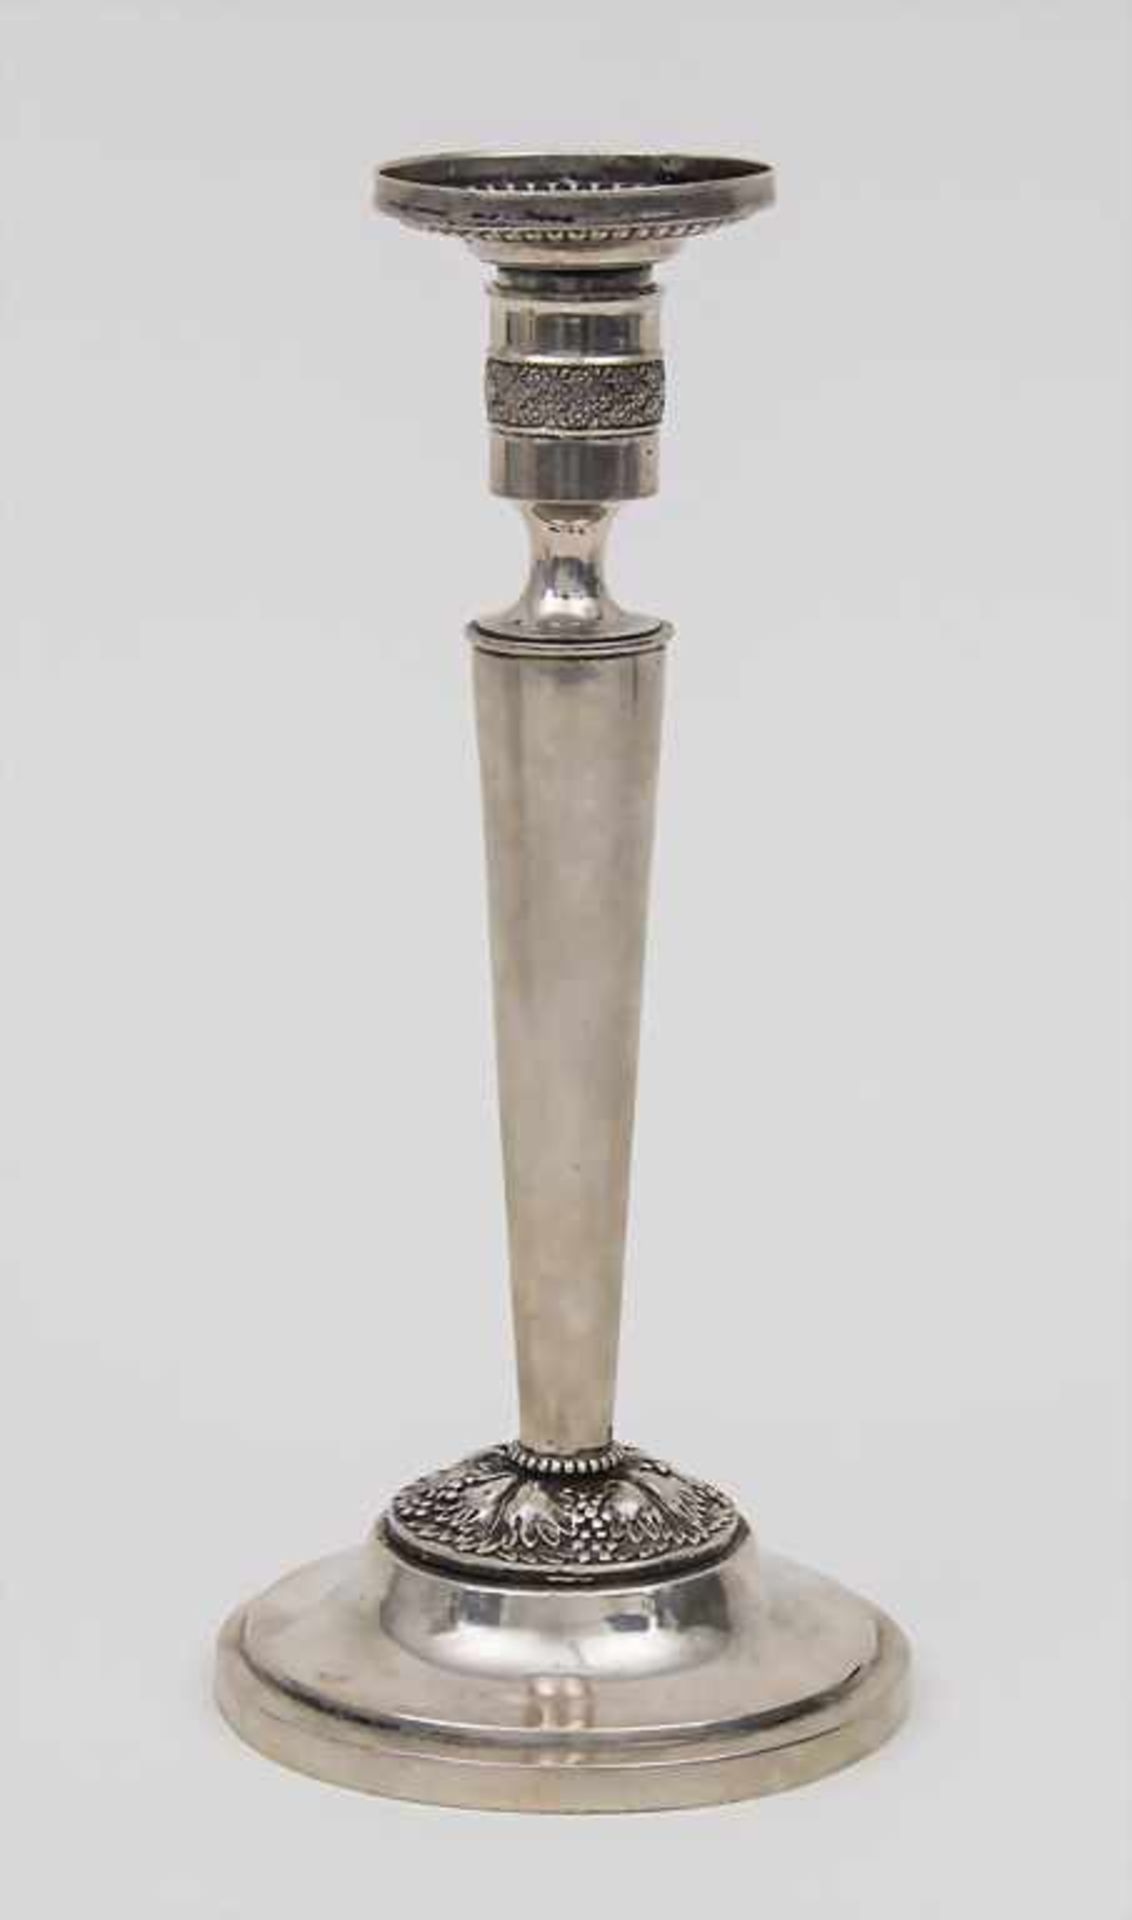 Empire Leuchter / Candle Stick, um 1820 Material: Silber 12 Lot,Punzierung: 12, Meisterpunze CLH,